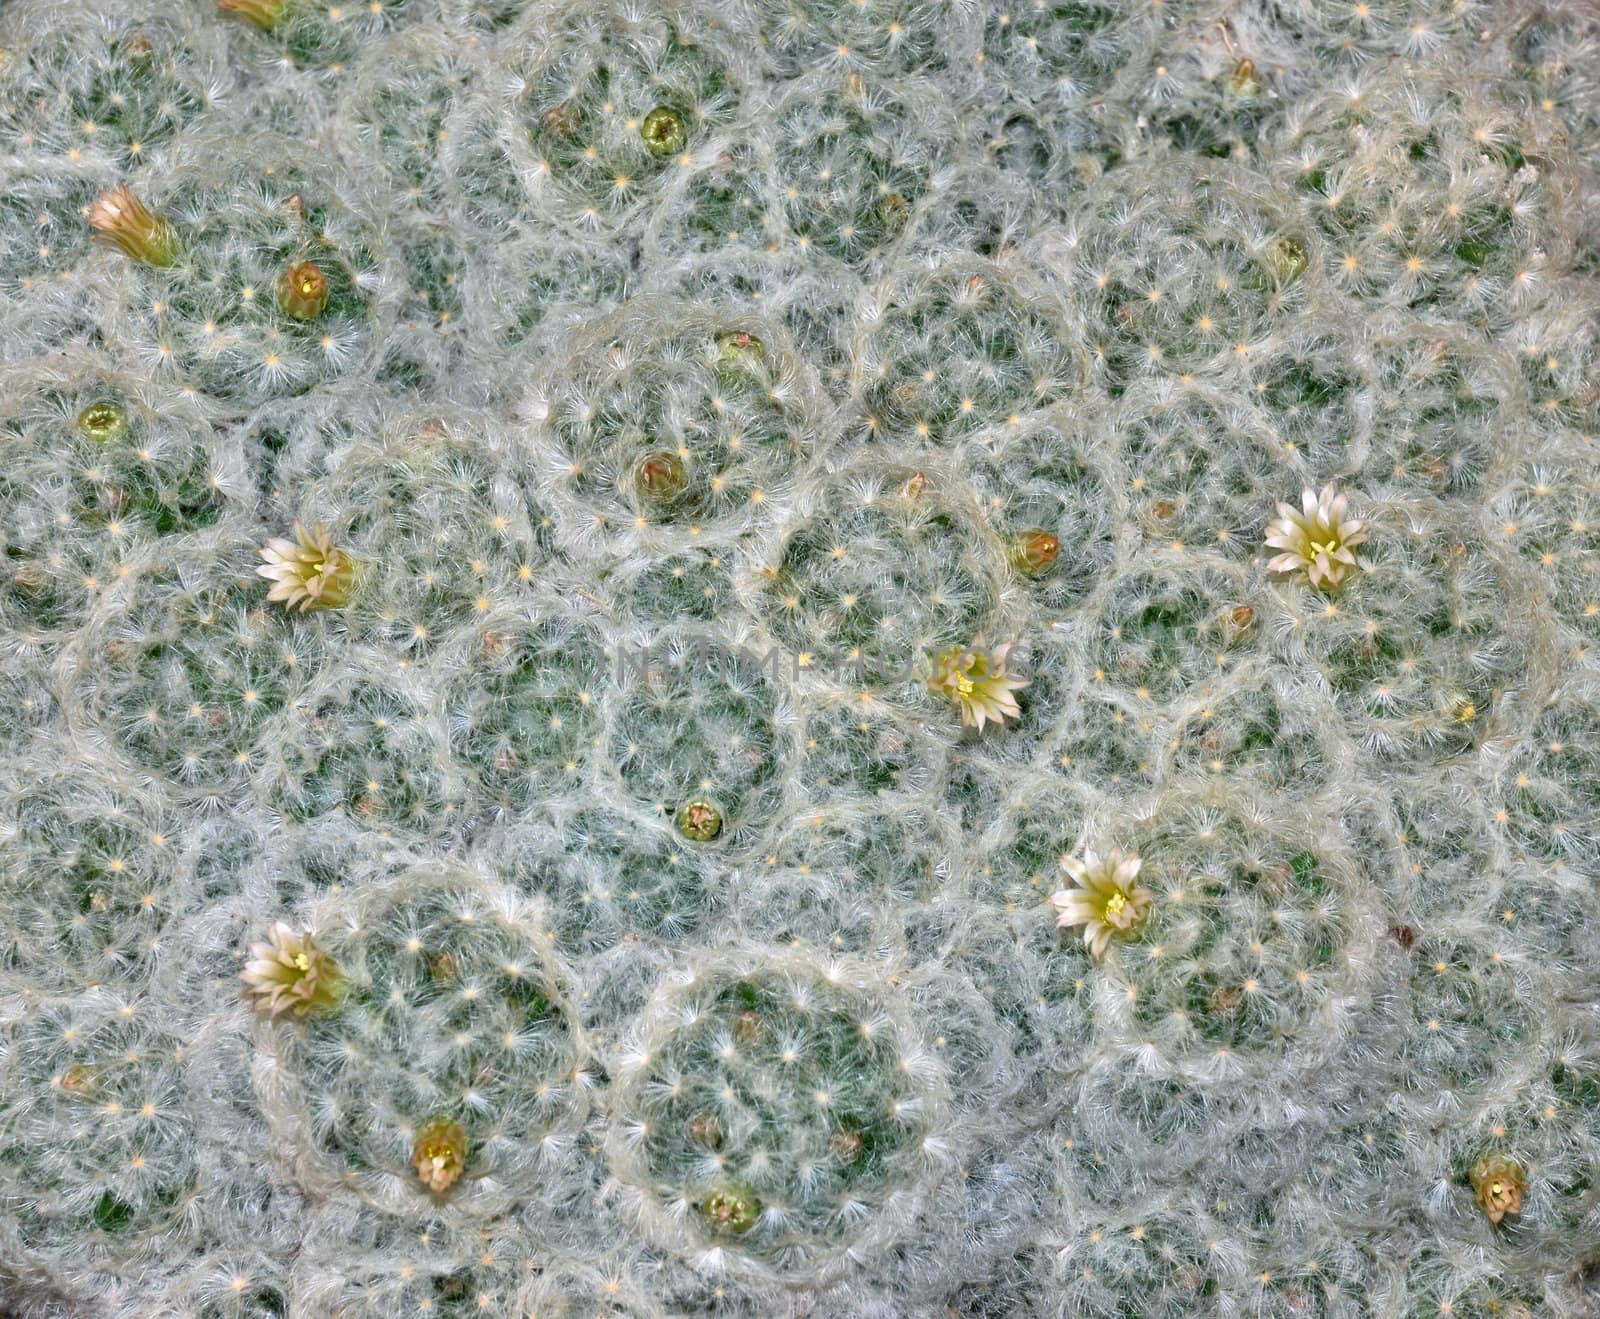 Close-up of a cactus Mammillaria plumosa in bloom. 